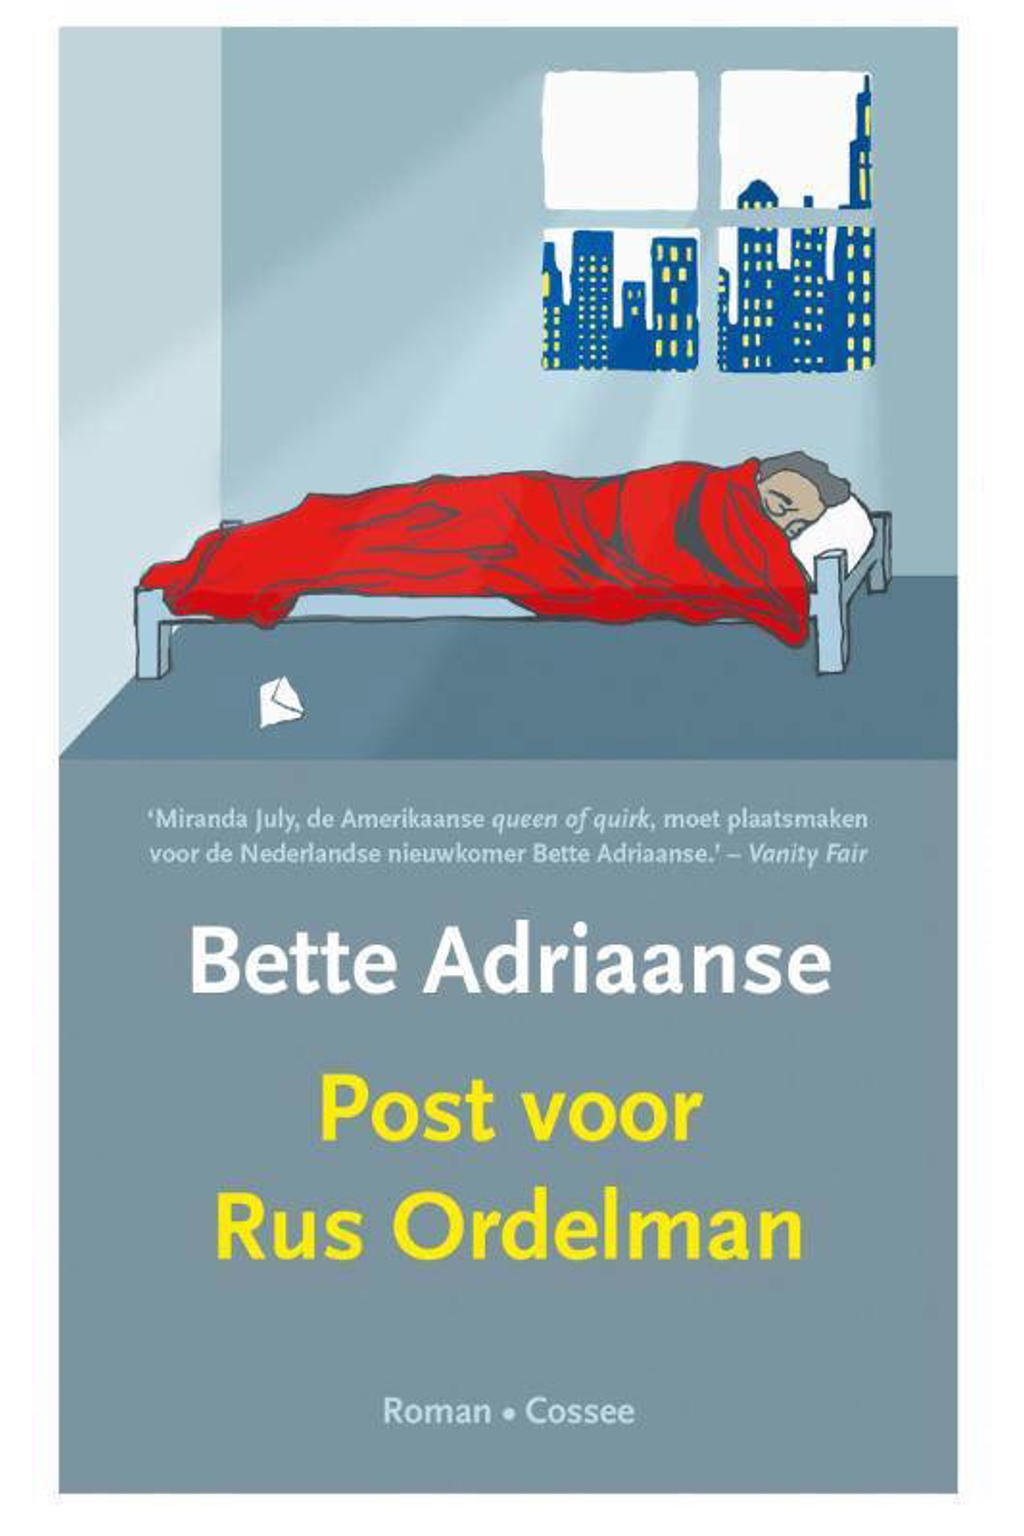 Post voor Rus Ordelman - Bette Adriaanse